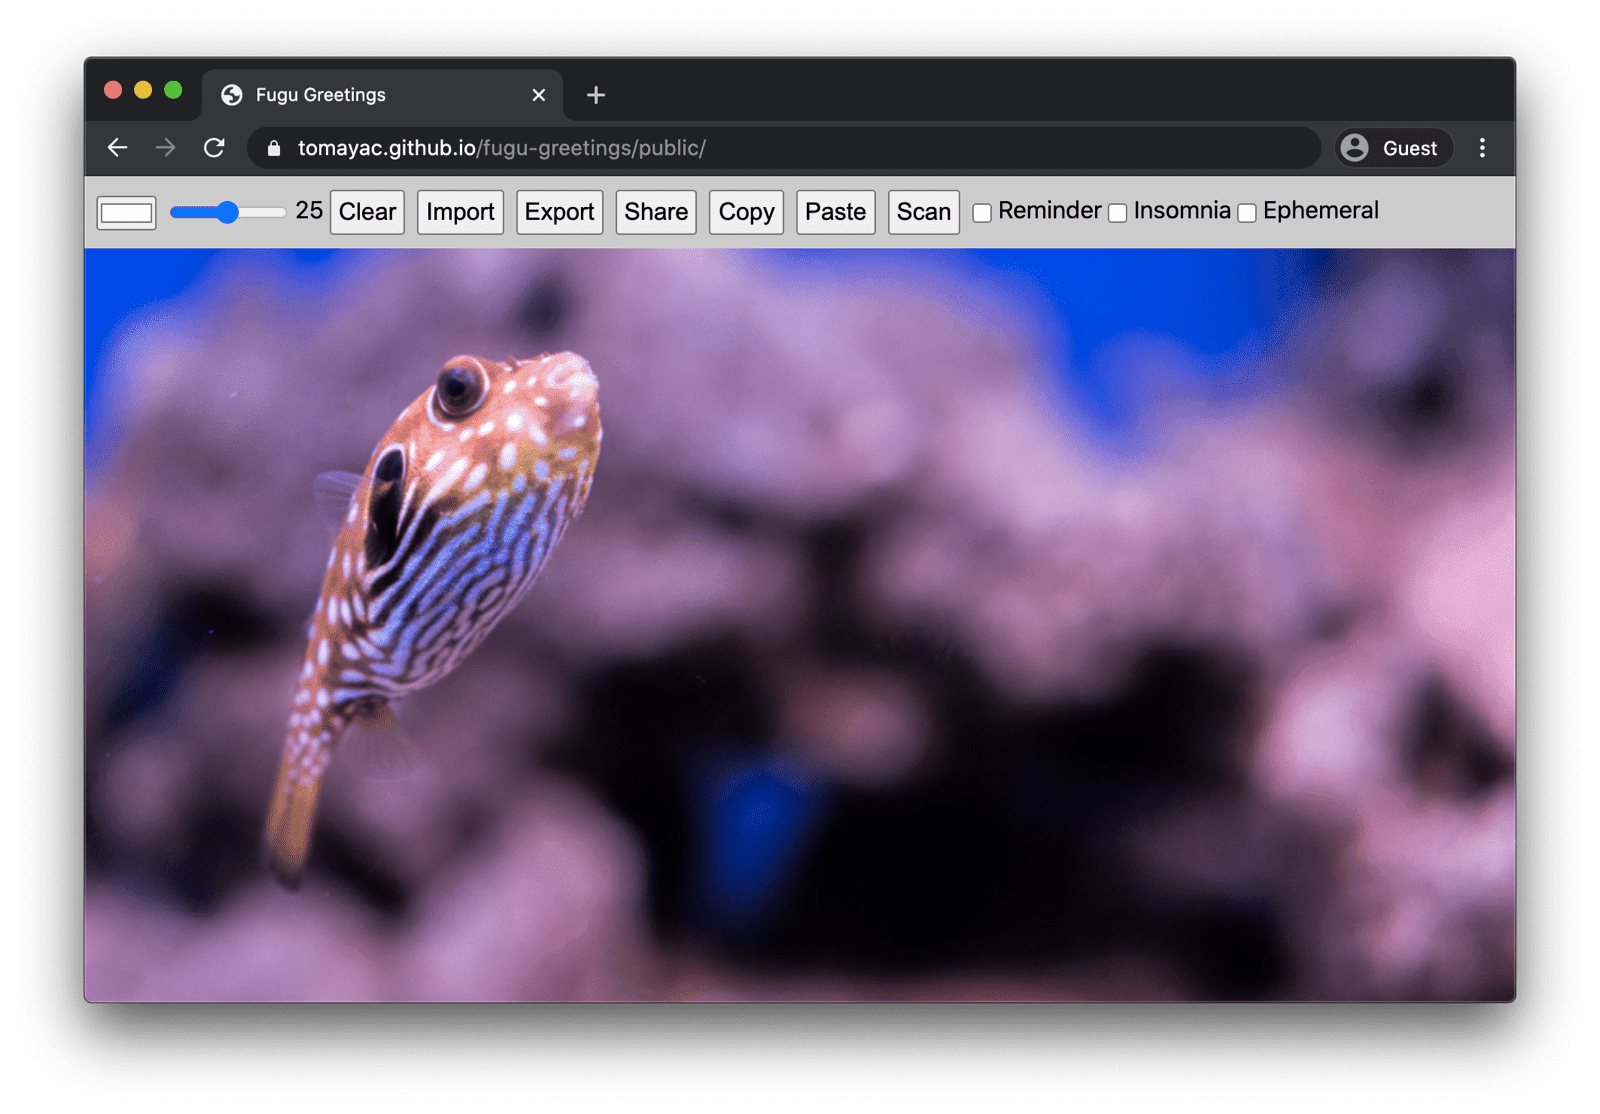 Fugu Greetings em execução no Chrome para computador, mostrando muitos recursos disponíveis.